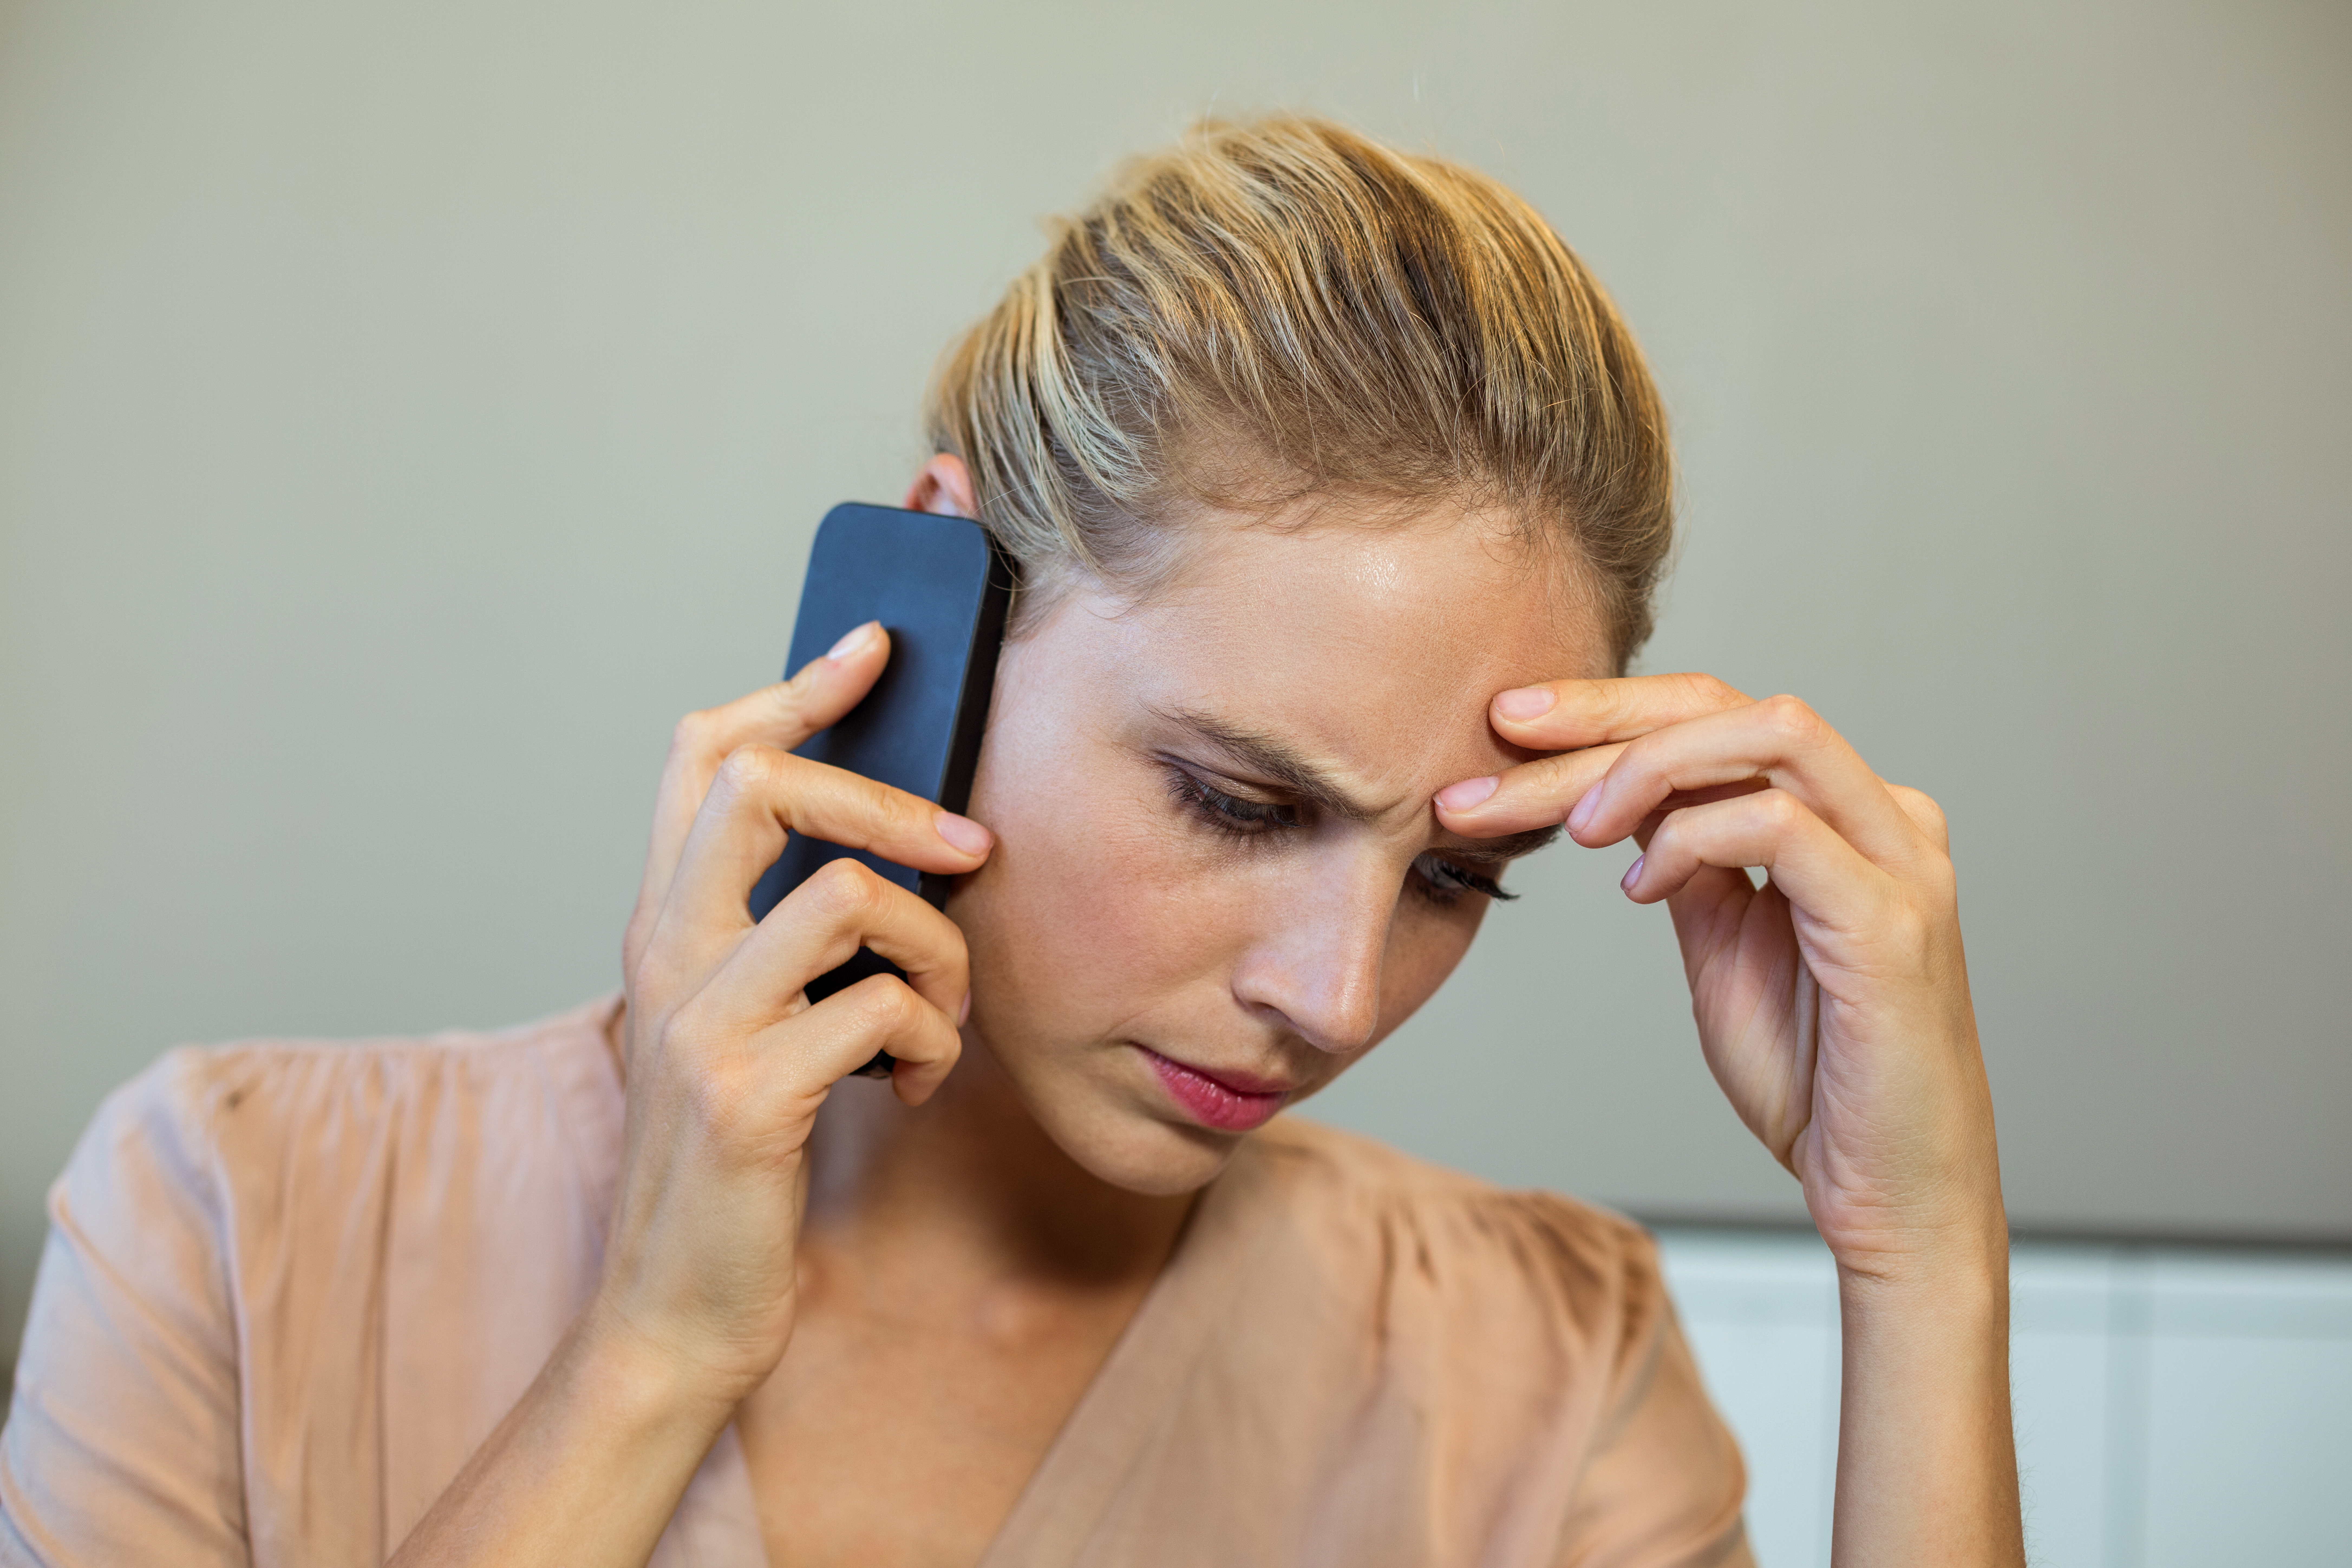 Une femme semble être préoccupée alors qu'elle est au téléphone | Source : Shutterstock